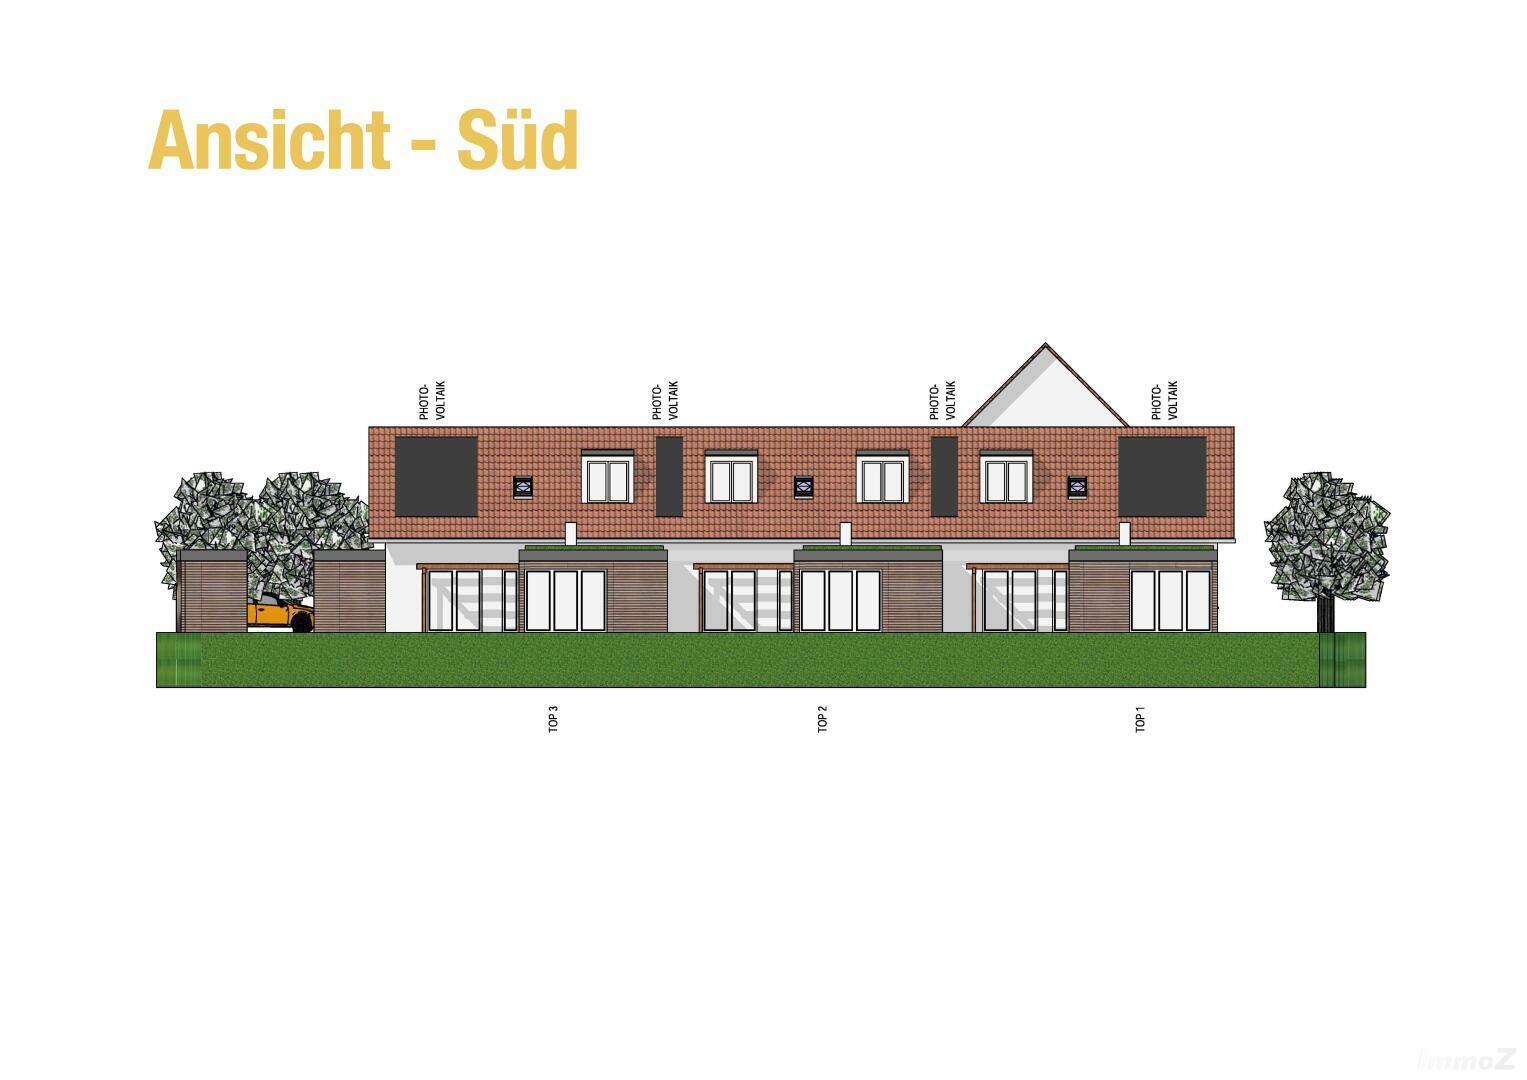 Haus zu kaufen: Ebenholzstraße 24, 8062 Gschwendt - Projekt Ansicht Süd